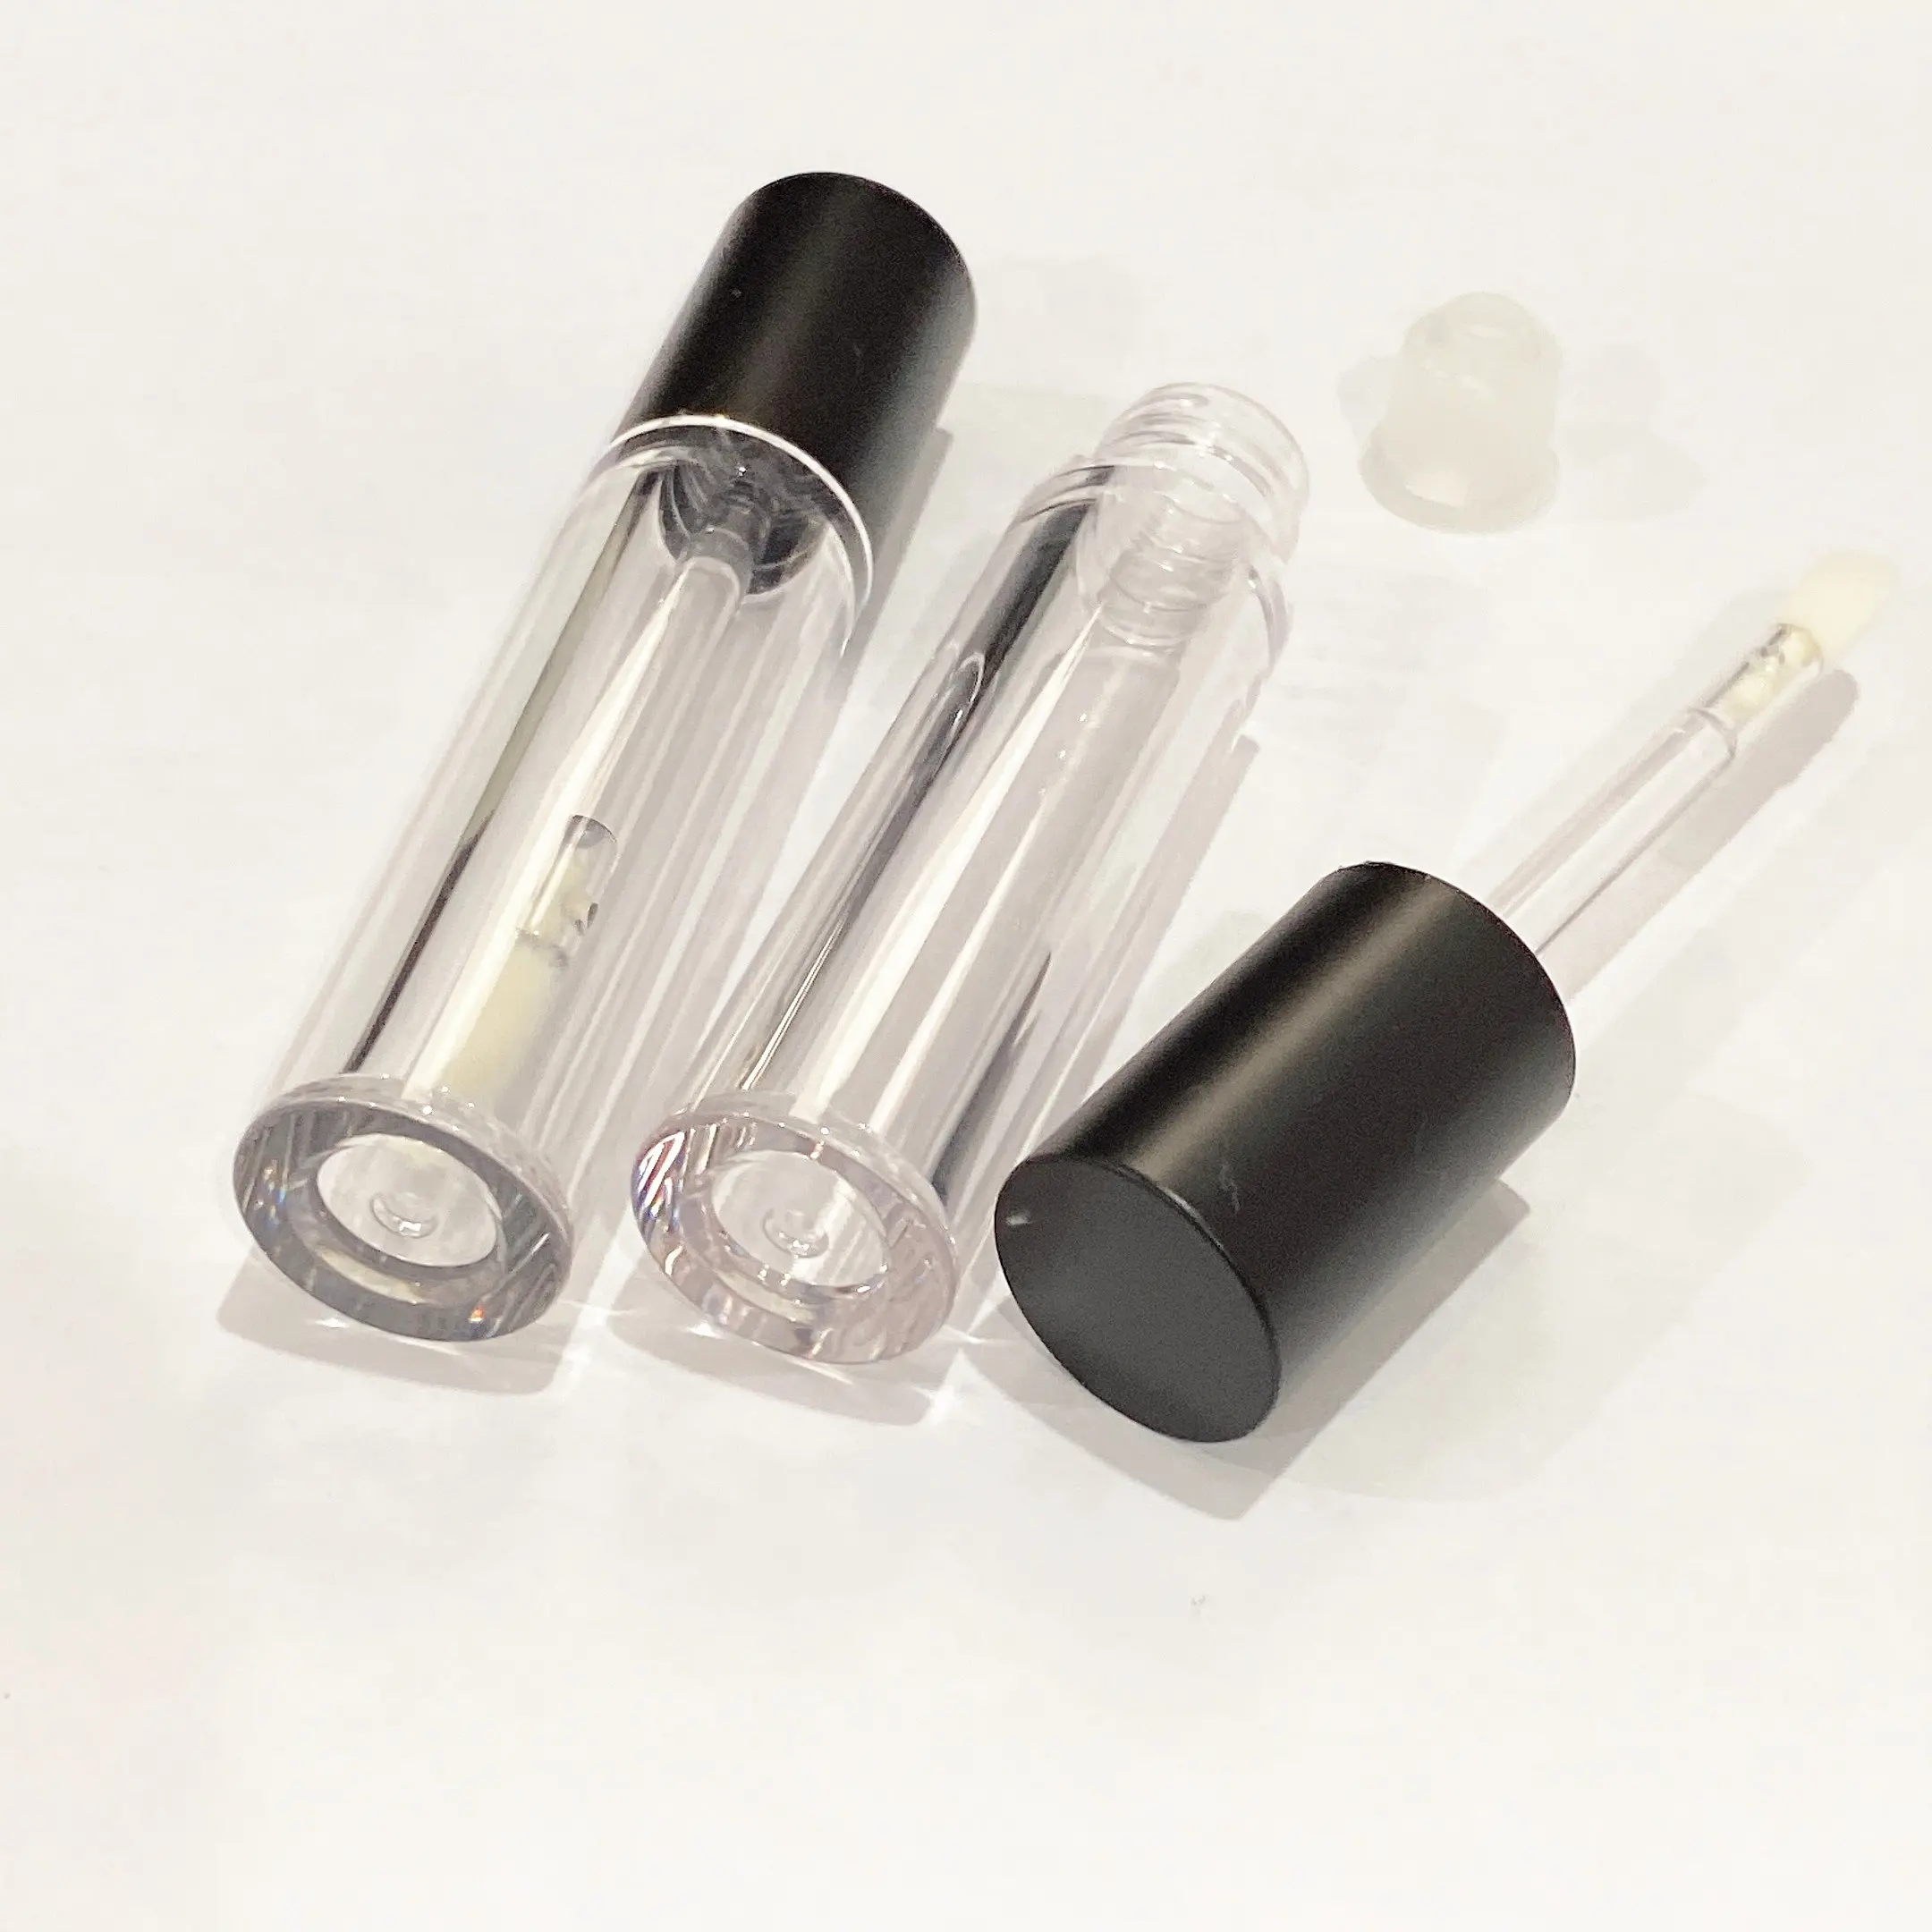 Yuvarlak boş 4ML dudak parlatıcısı tüpleri fırça ile özel ambalaj şeffaf sıvı ruj konteyneri aplikatör ile ve değnek